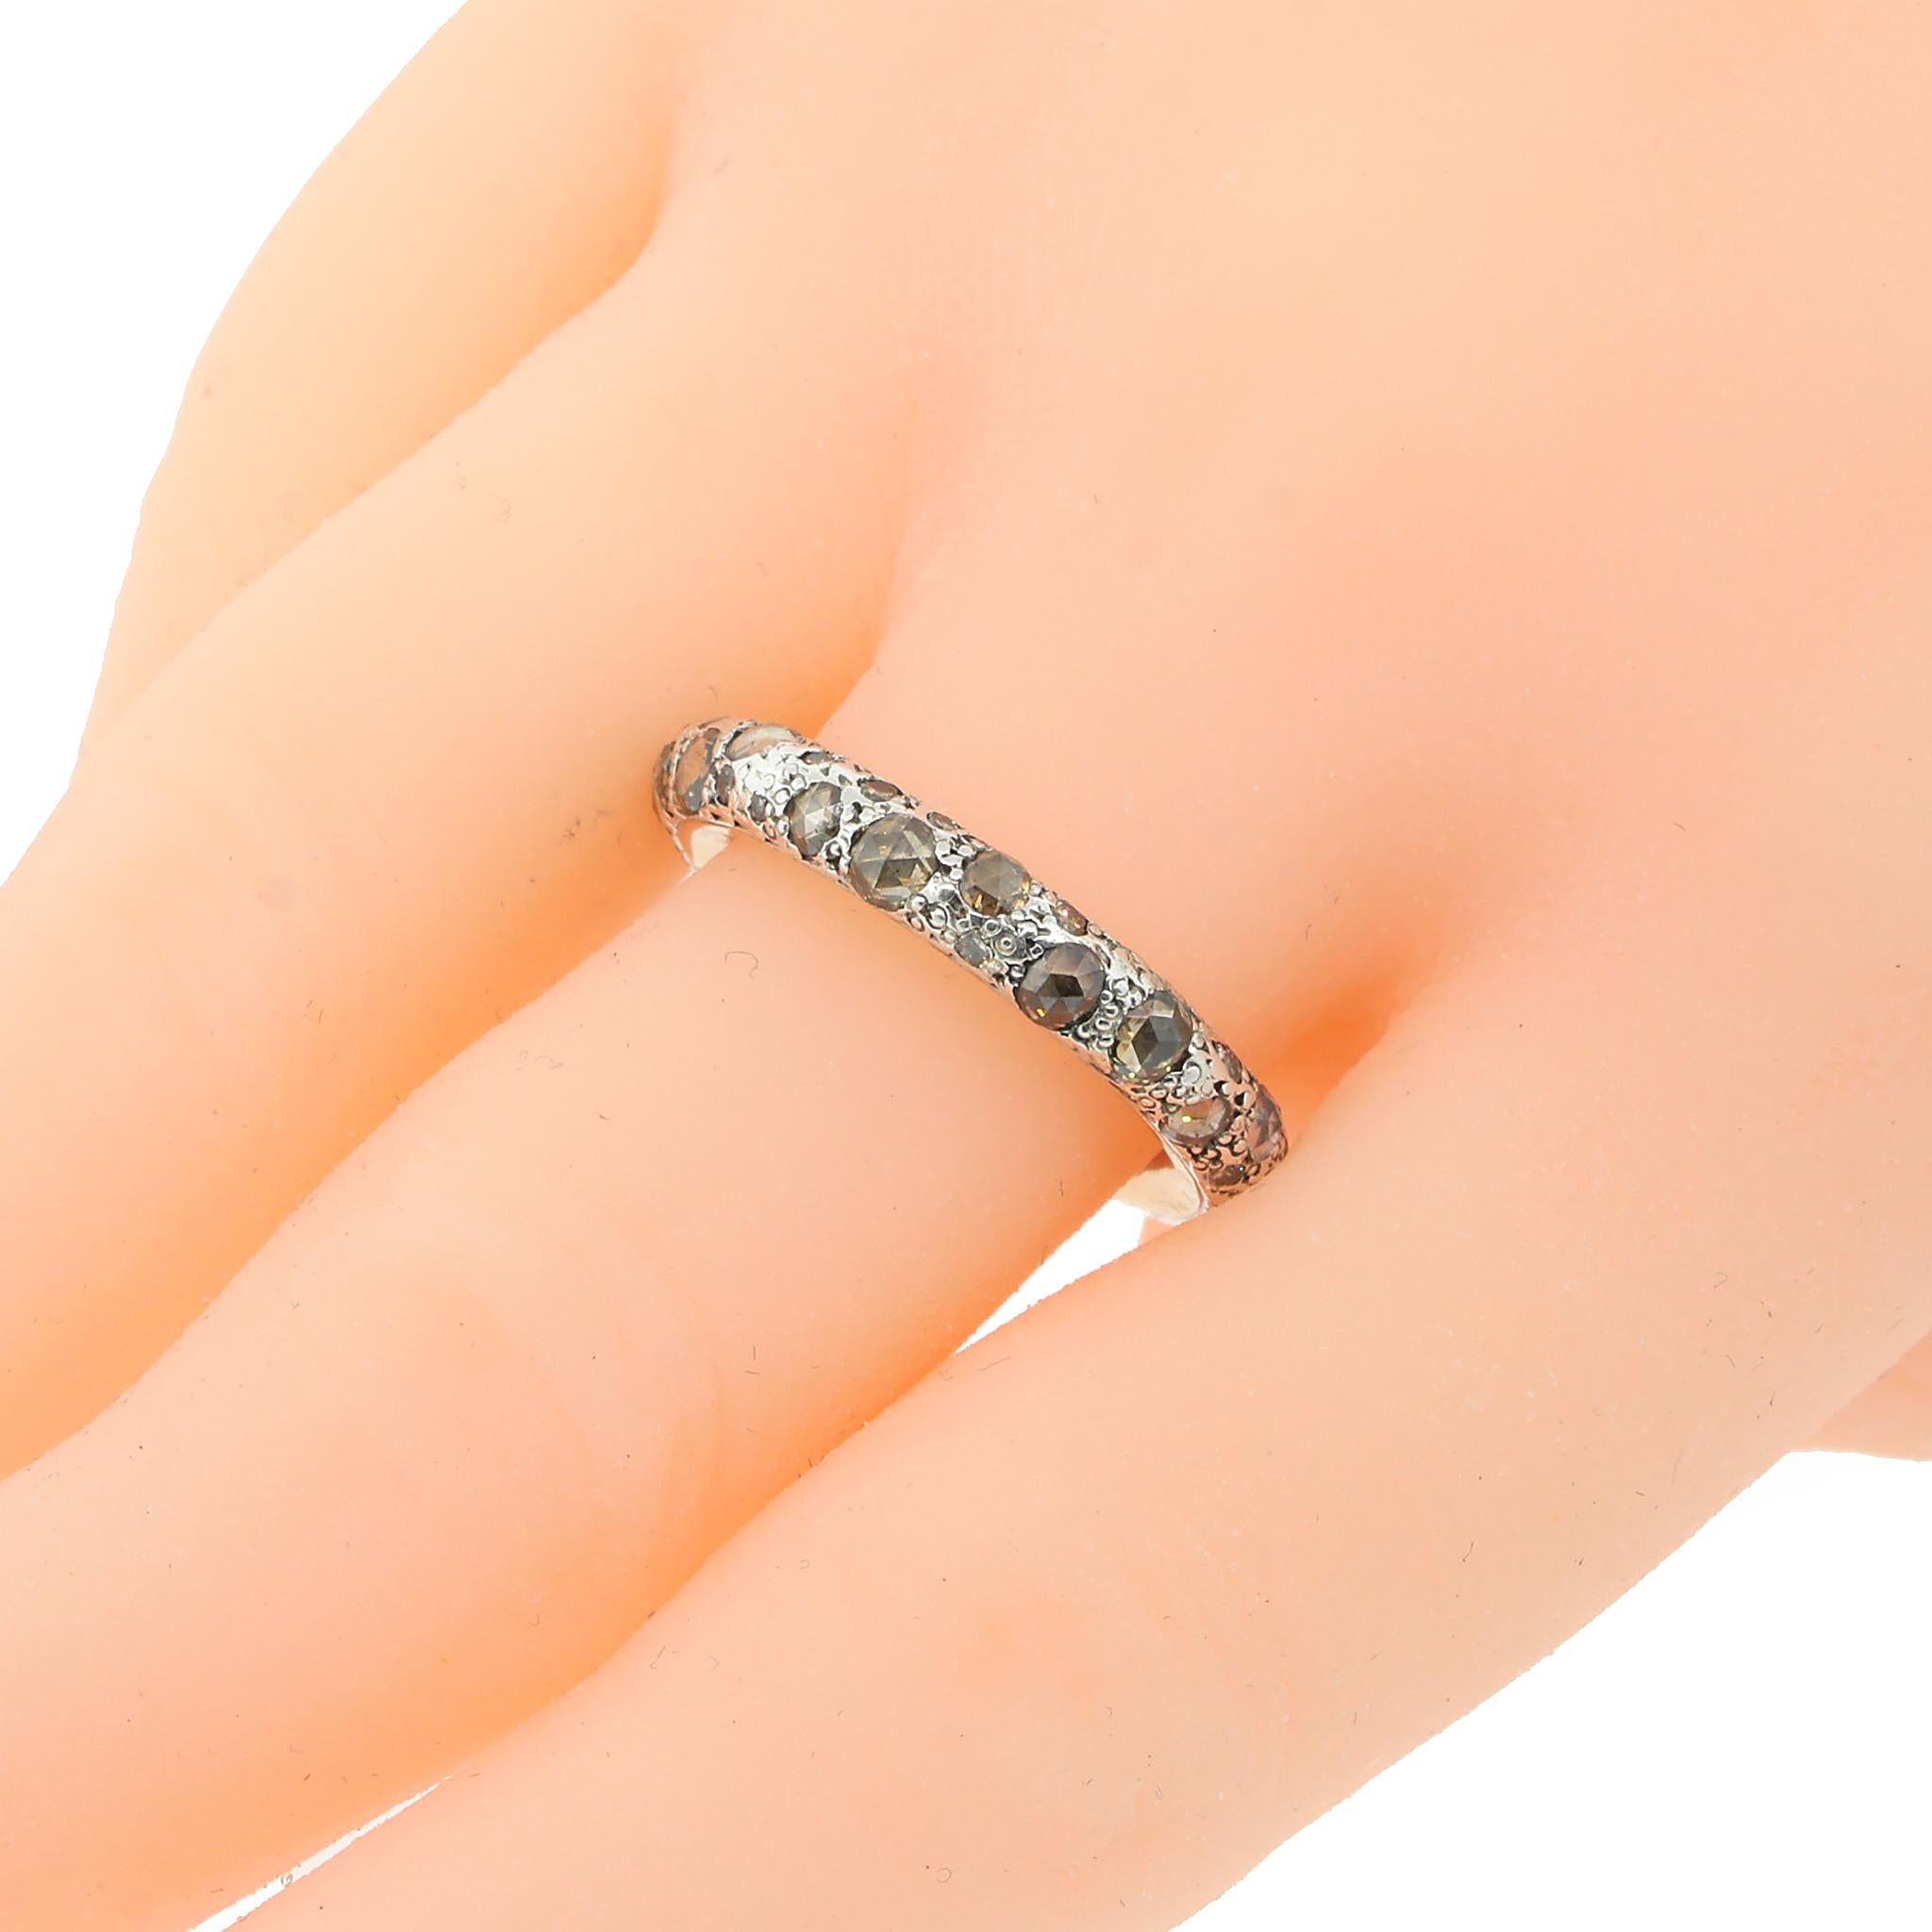 Women's or Men's Pomellato Diamond Tango Ring in Two-tone Gold and Silver